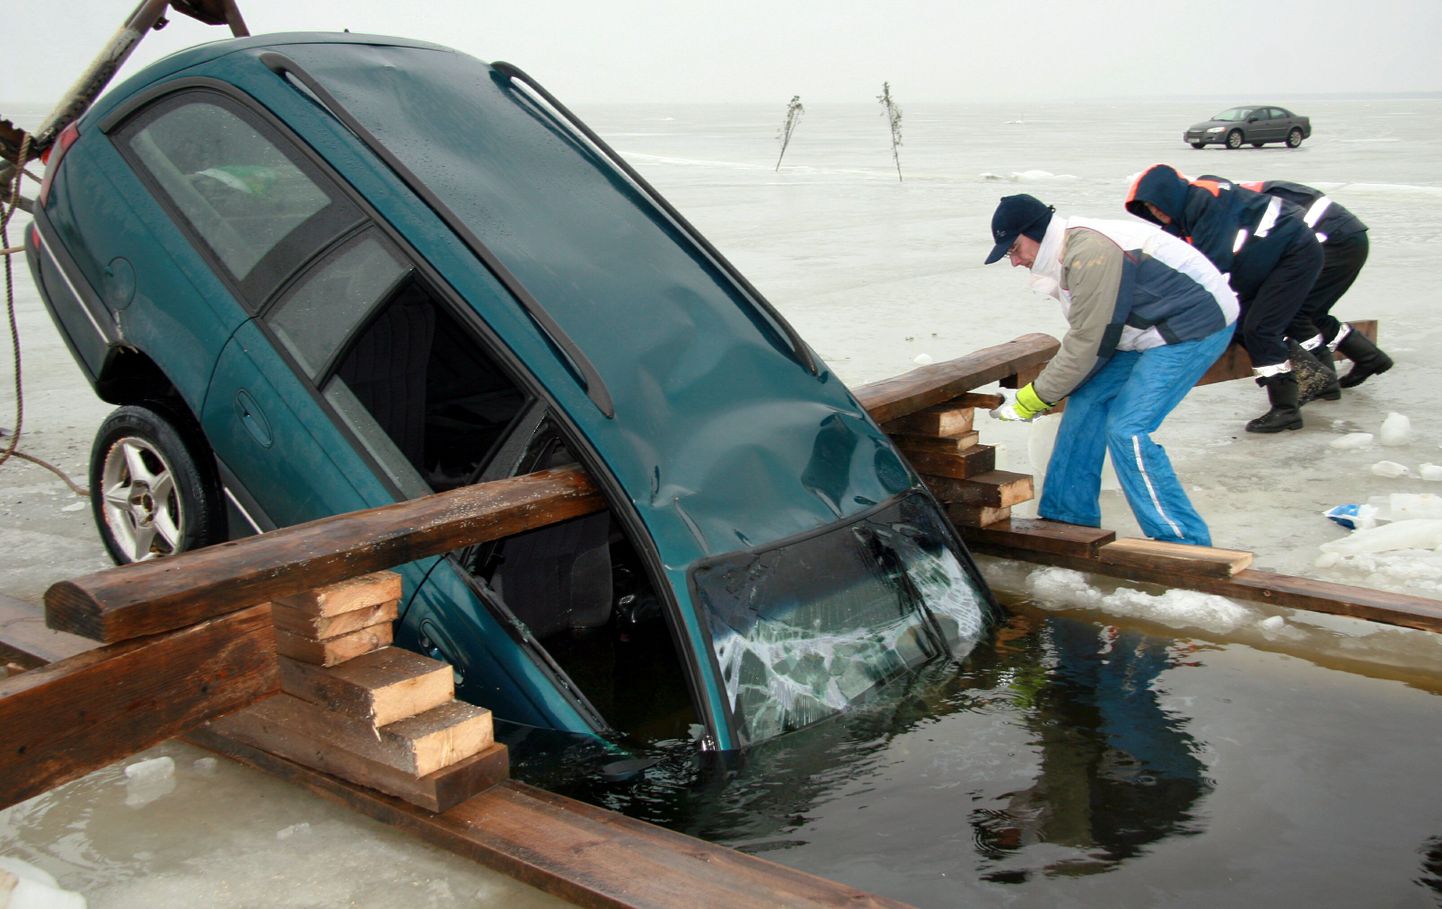 Pildil on läbi jää vajunud auto väljatõstmine Kihnu jääteel 2007. aasta märtsis.